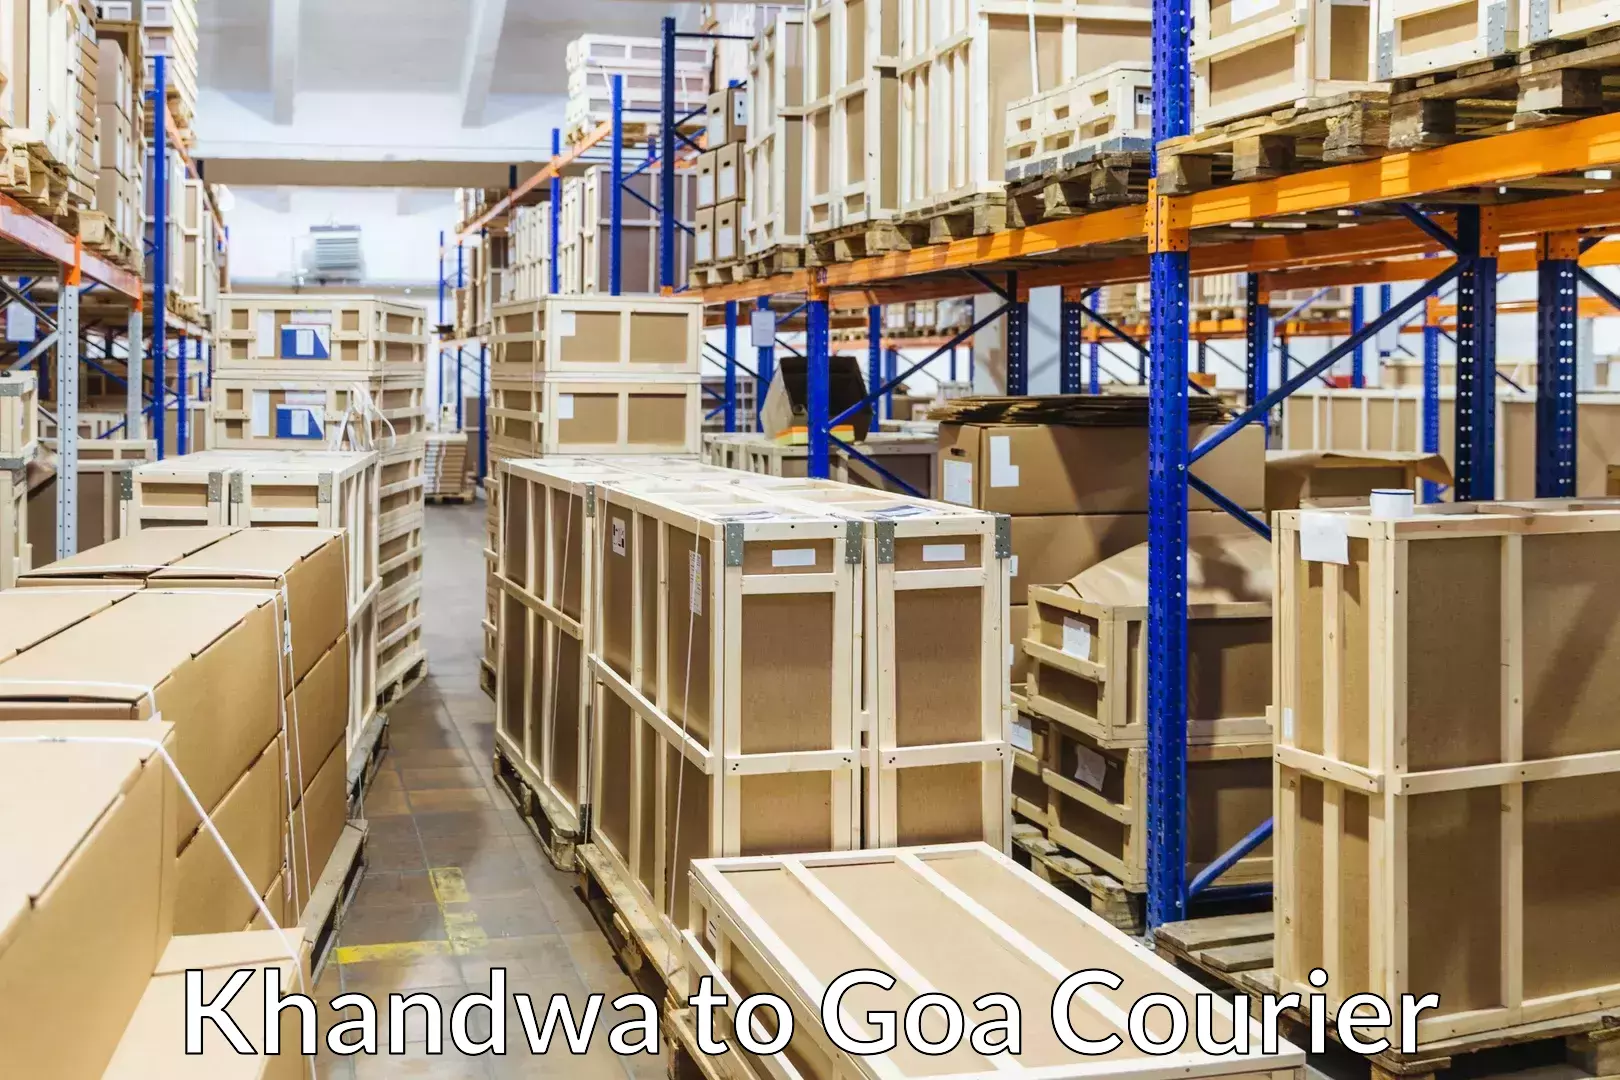 Furniture transport and storage Khandwa to Panjim